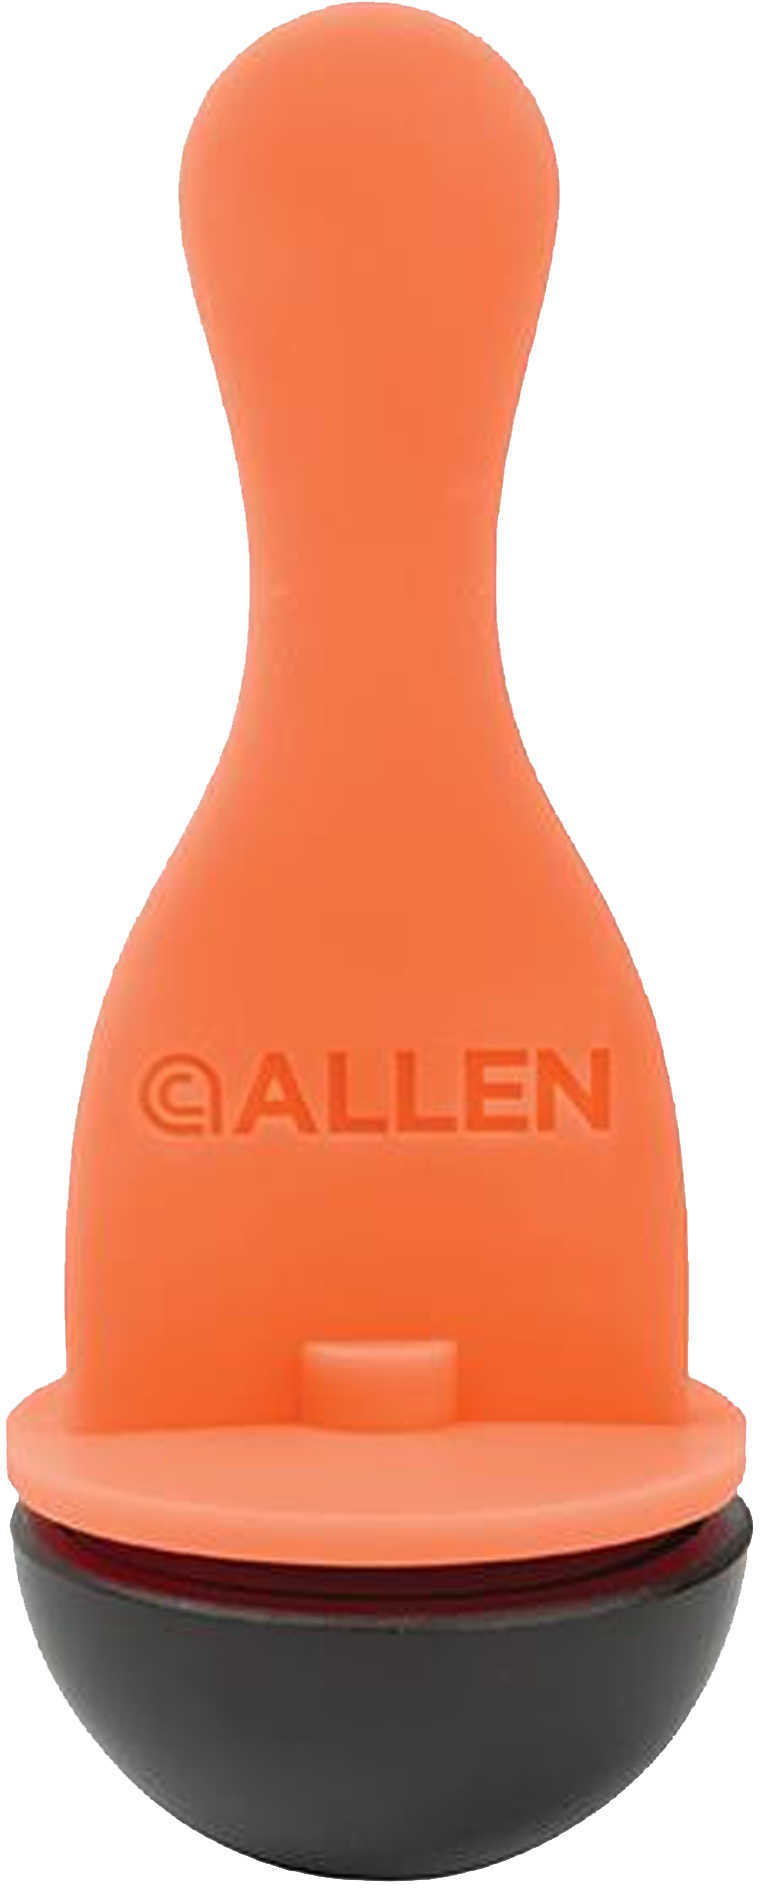 Allen Take-A-Hit Target Bowling Pin Orange Model: 15443